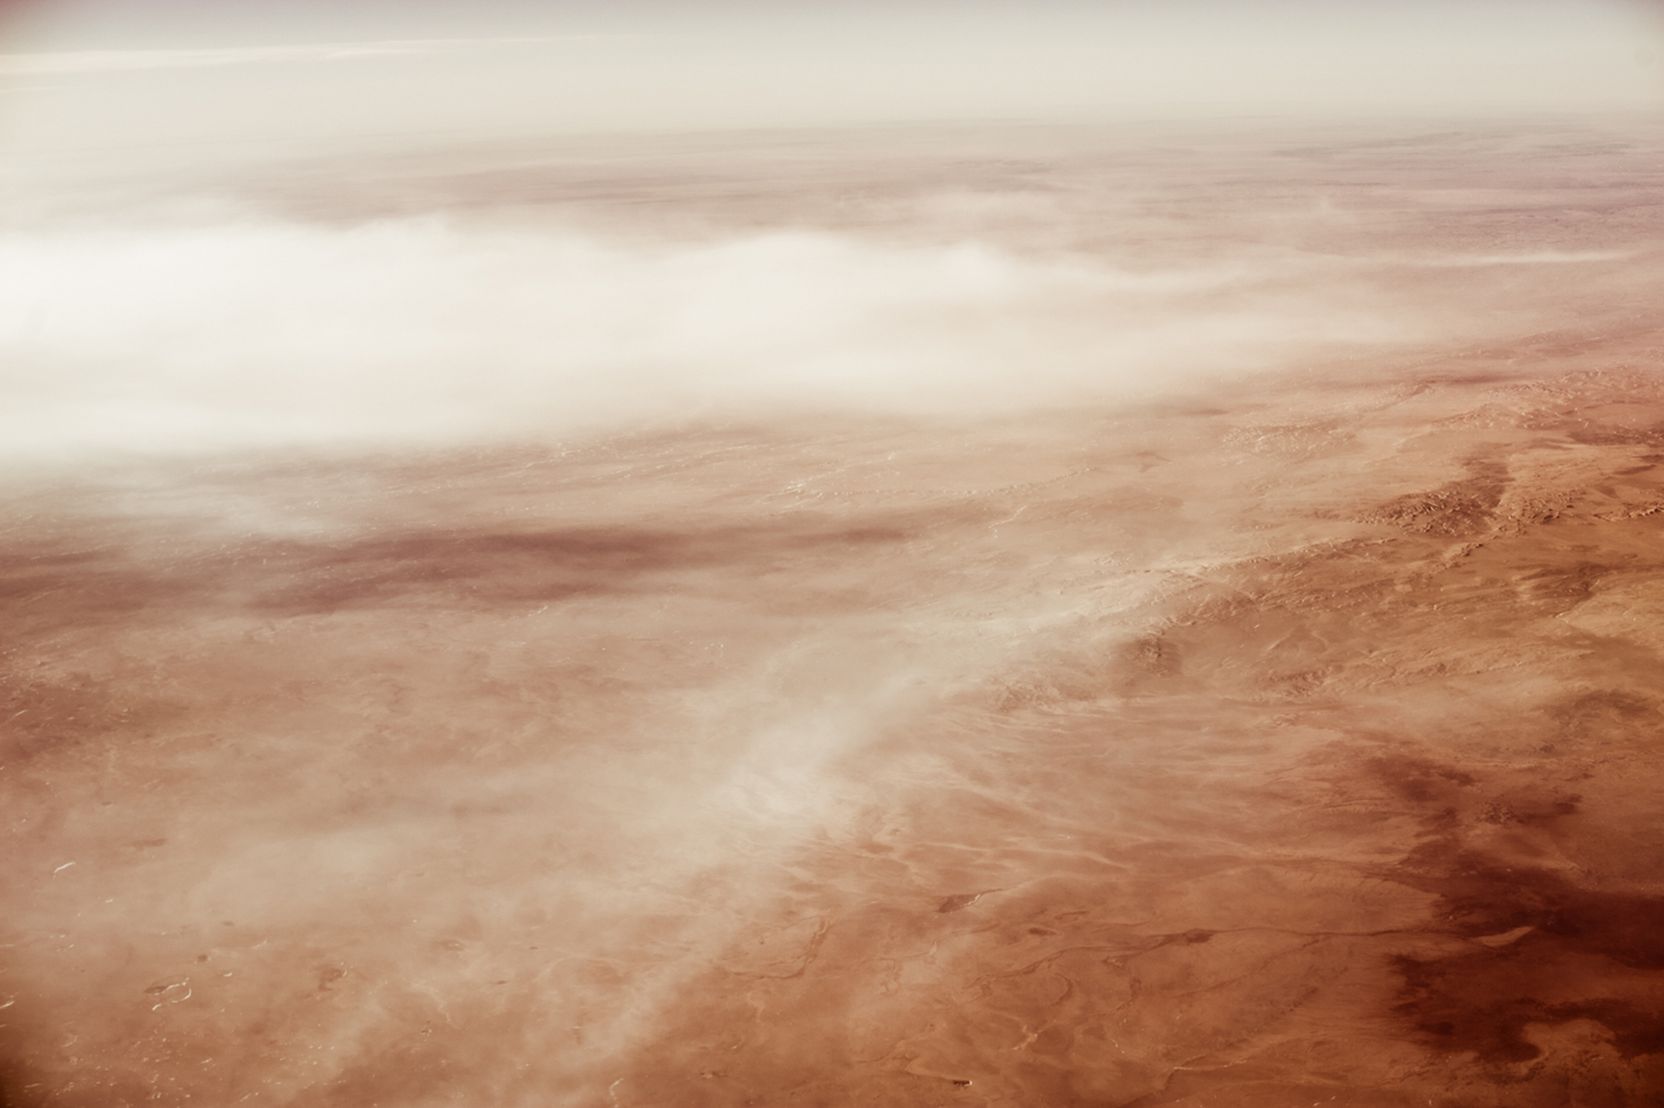 Luftbildaufnahme einer sandigen Hügellandschaft mit feinen Wolken